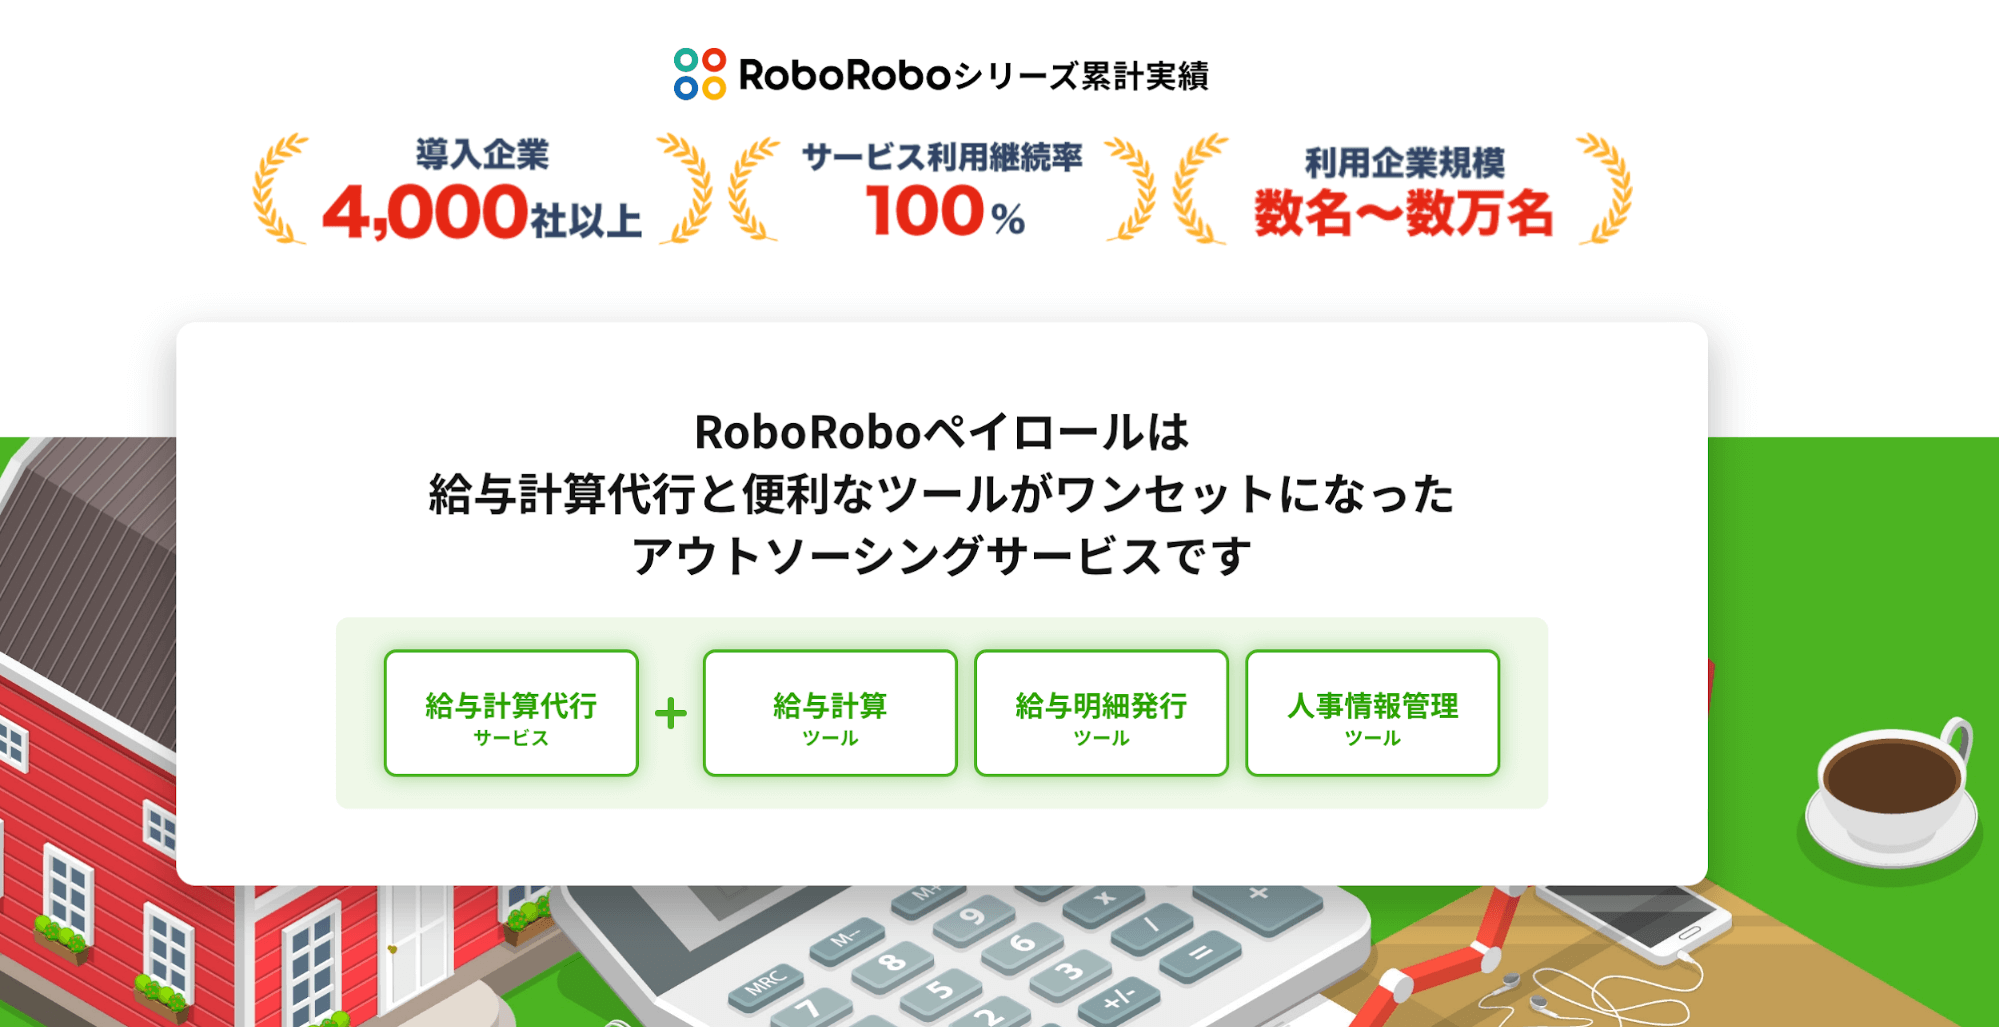 RoboRoboペイロールの特徴